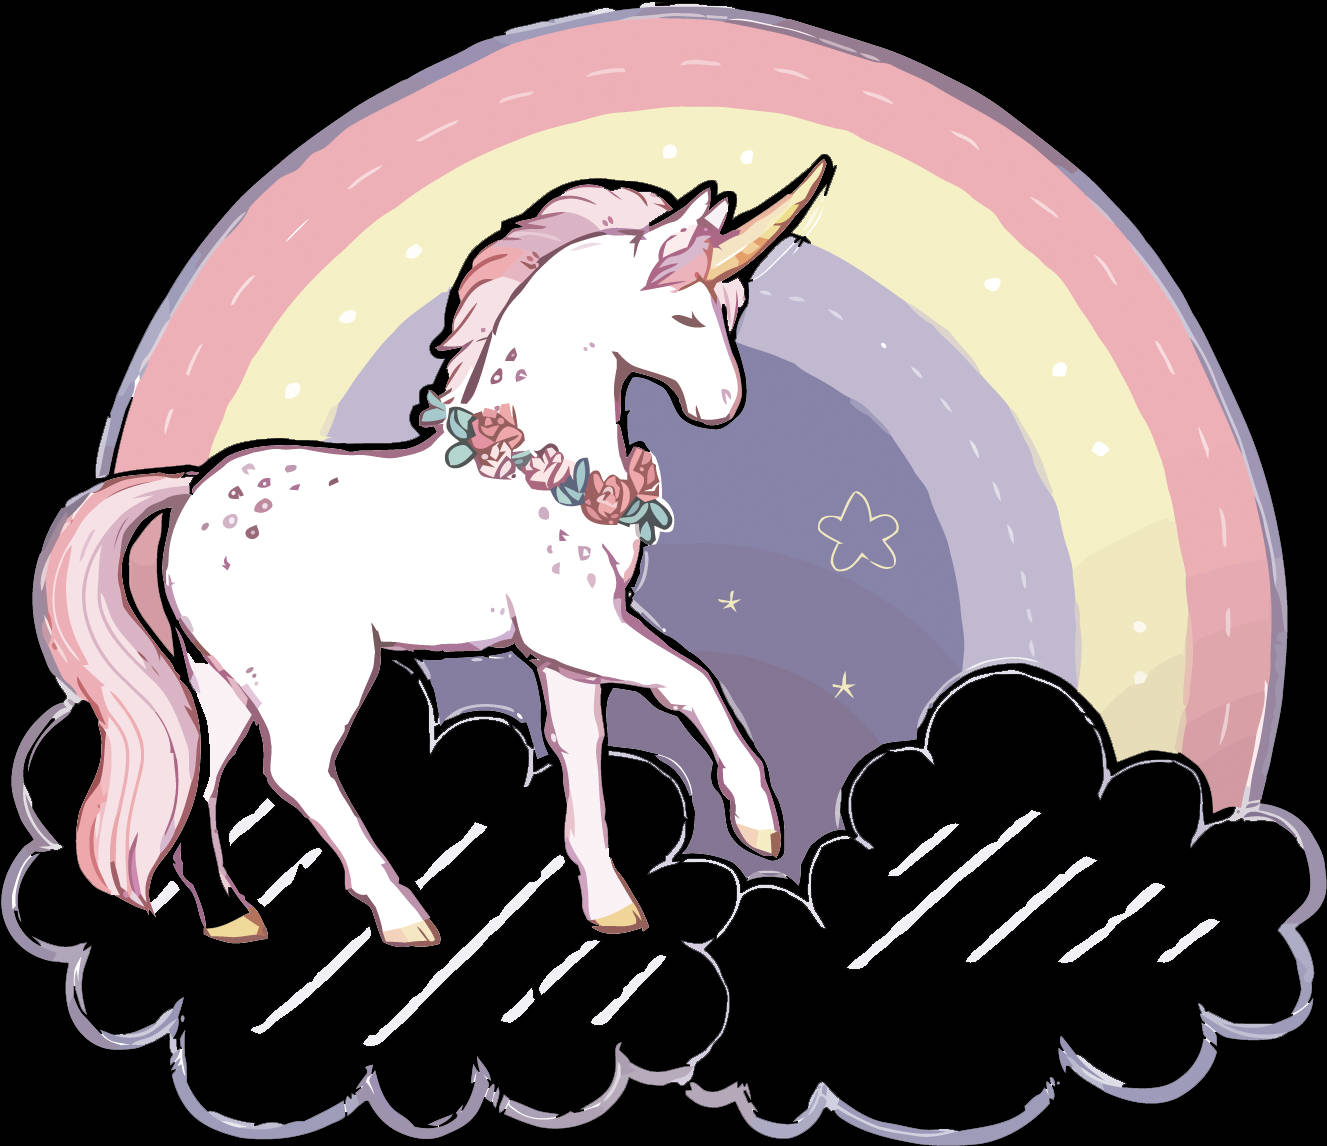 Magical Rainbow Unicorn Gliding Across A Star-studded Sky